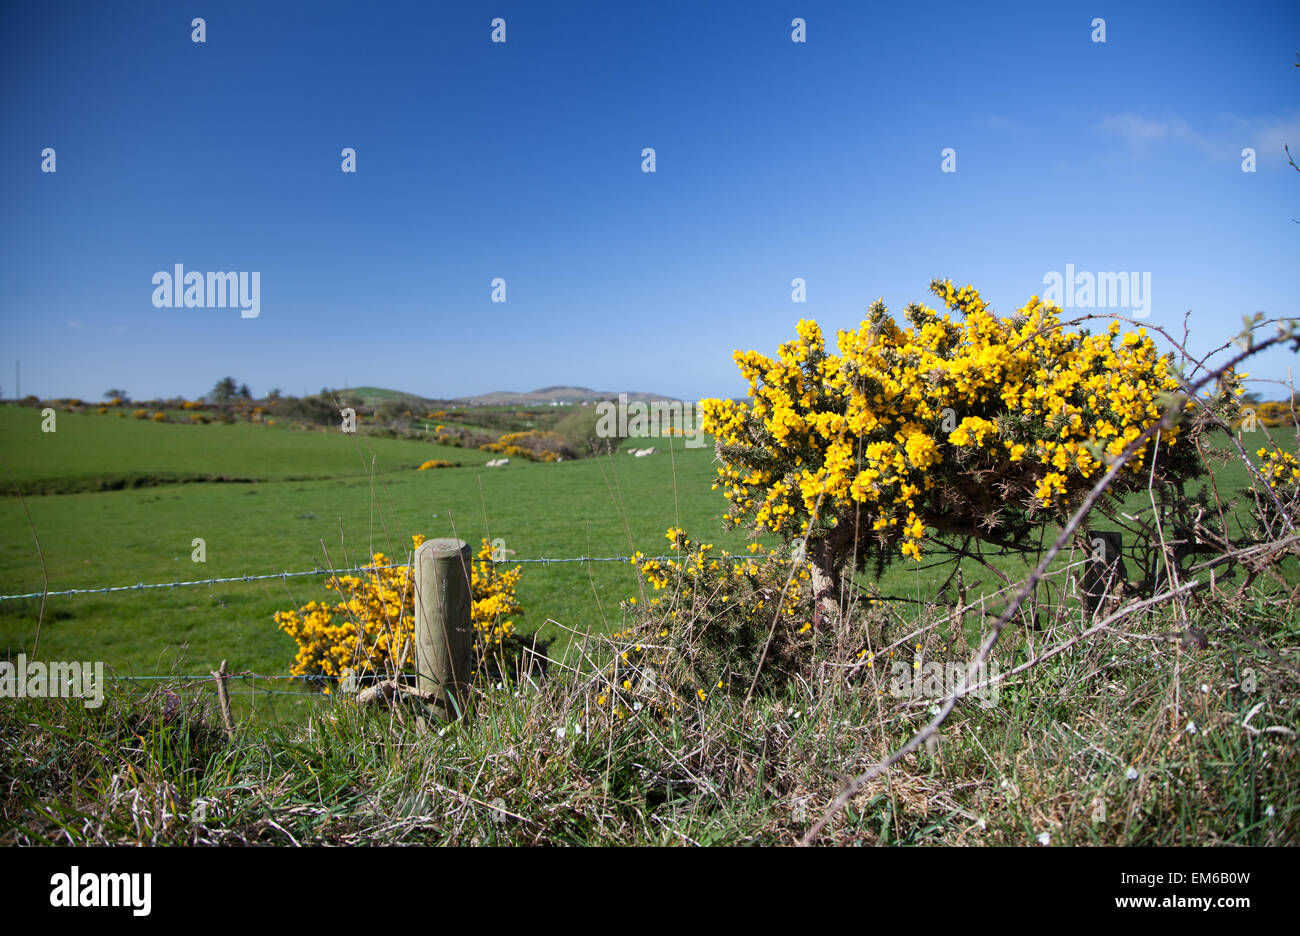 Un cliché pris sur une couverture d'ajoncs à la fin du printemps vers, Aberdaron Gwynedd, au nord du Pays de Galles à travers des champs verts et la campagne Banque D'Images